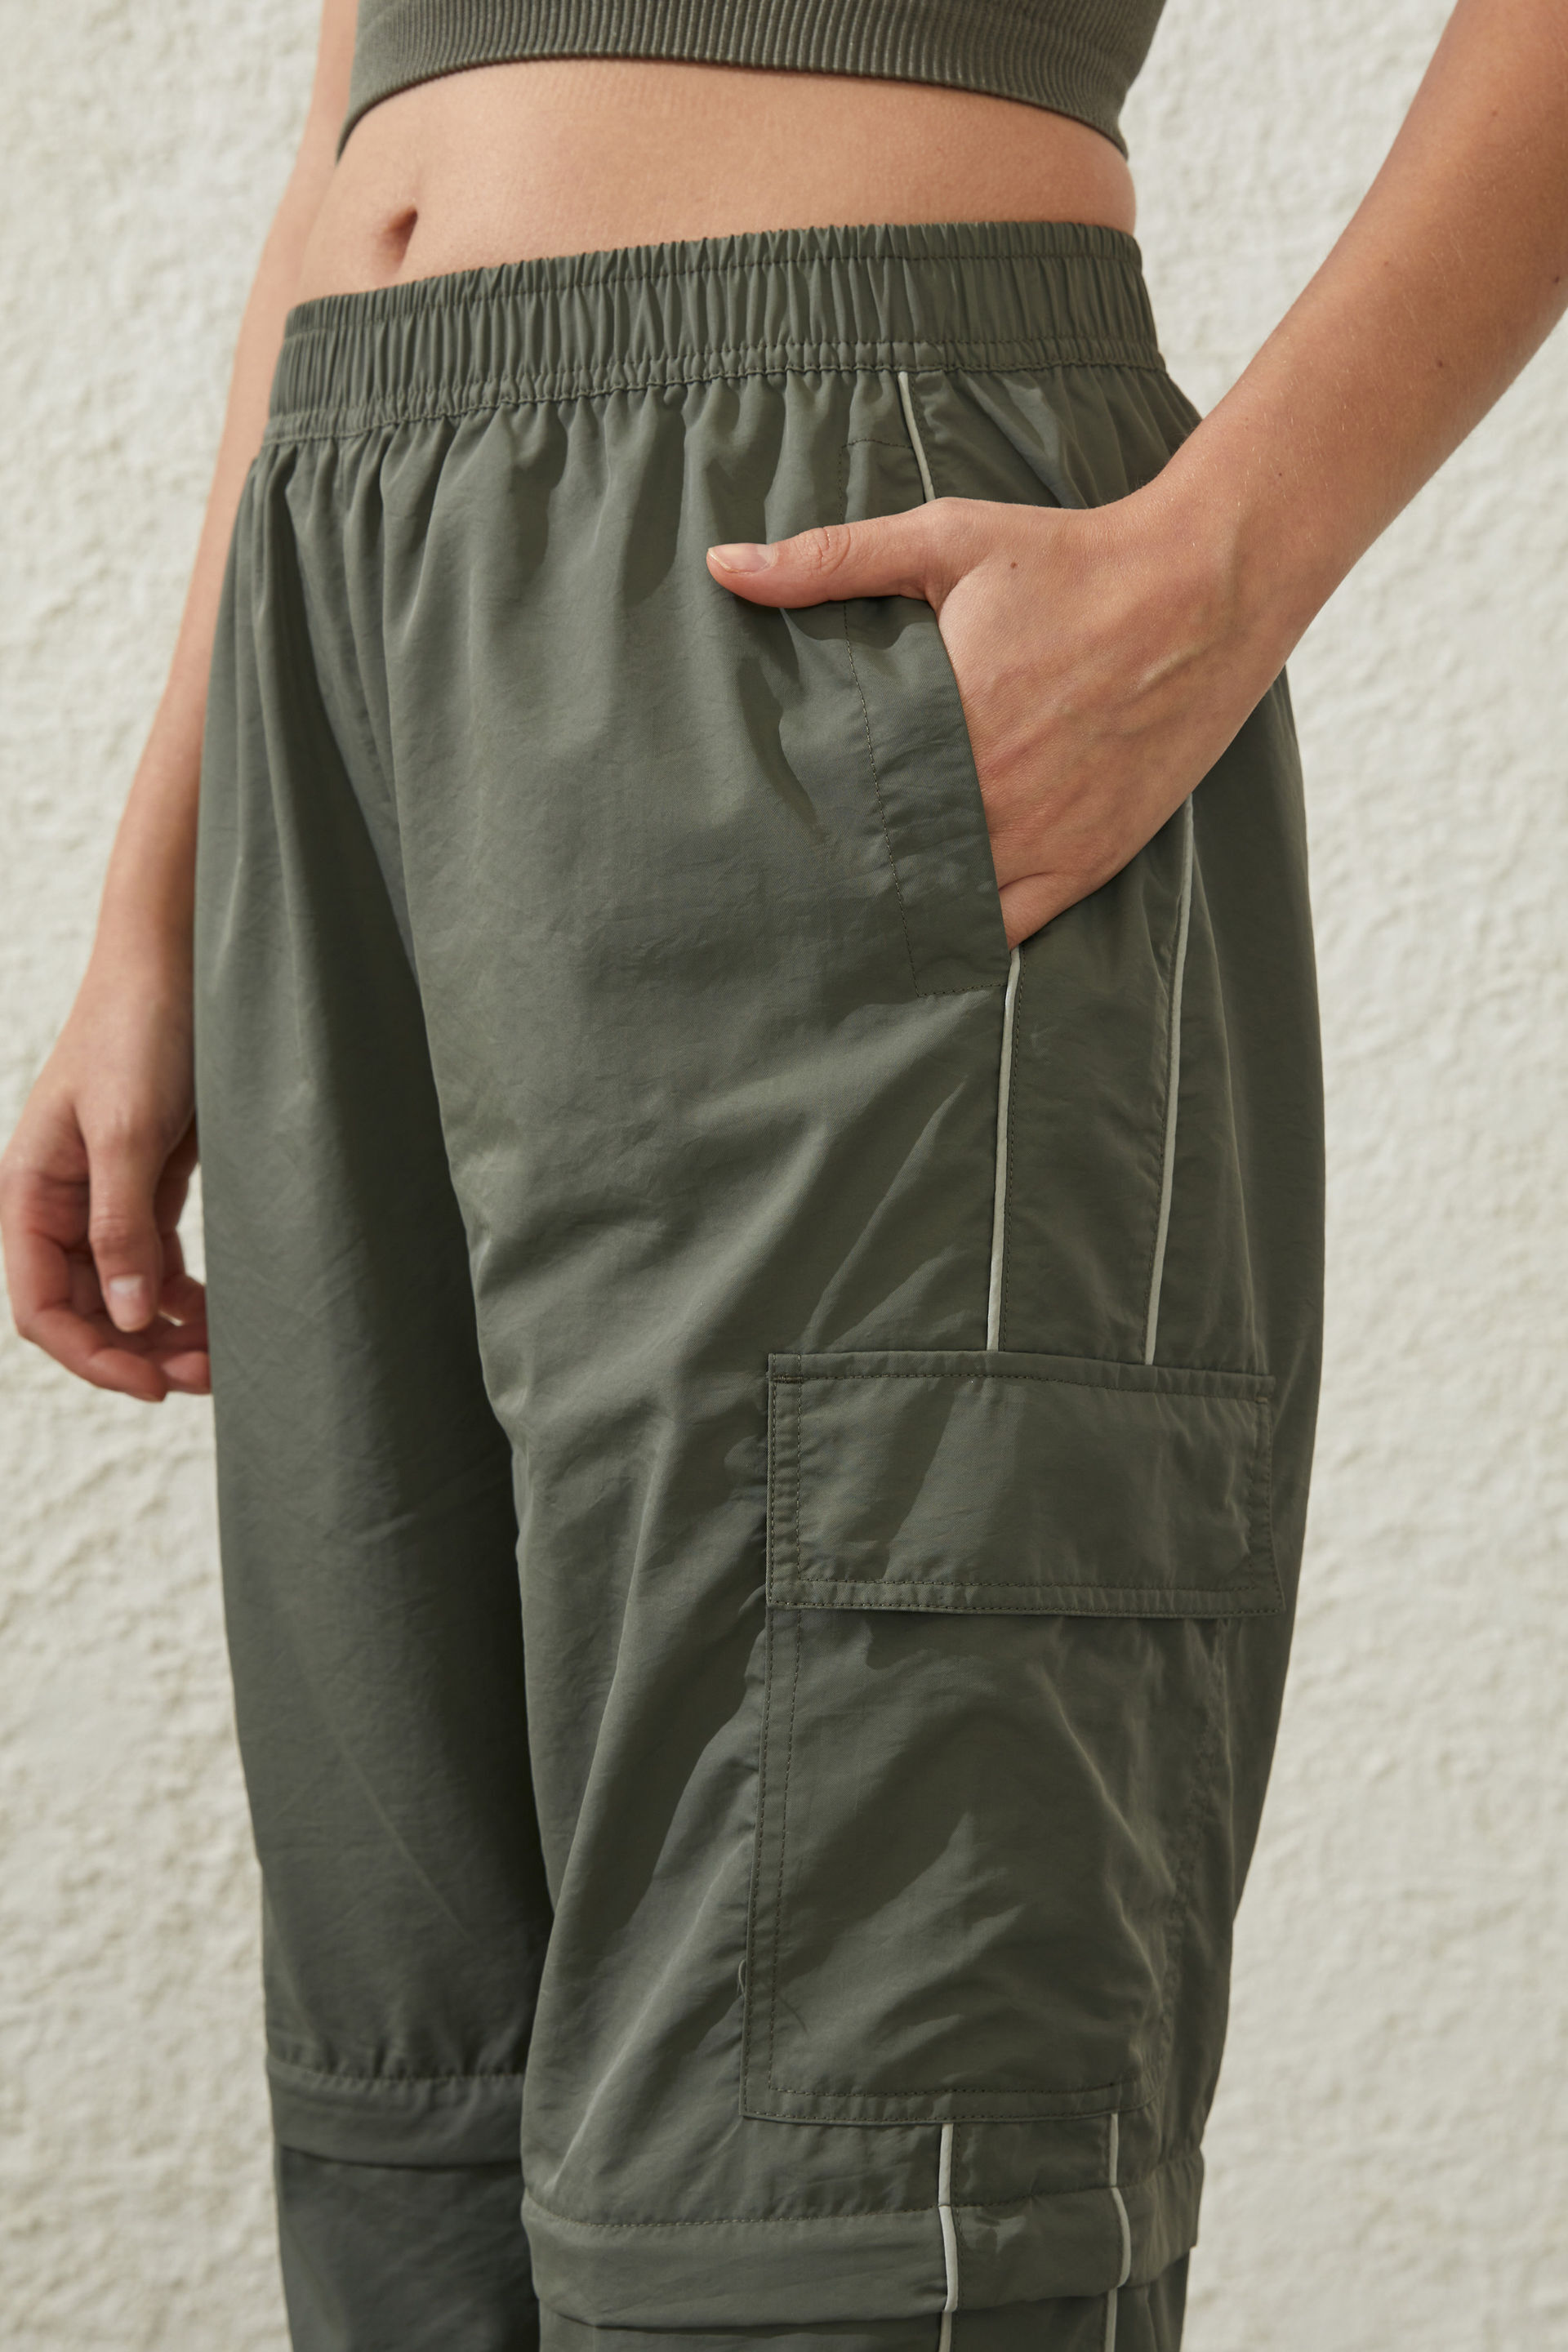 SNAP ZIPPER CARGO PANTS: snap zipper cargo pants – 9TEEN8IGHT